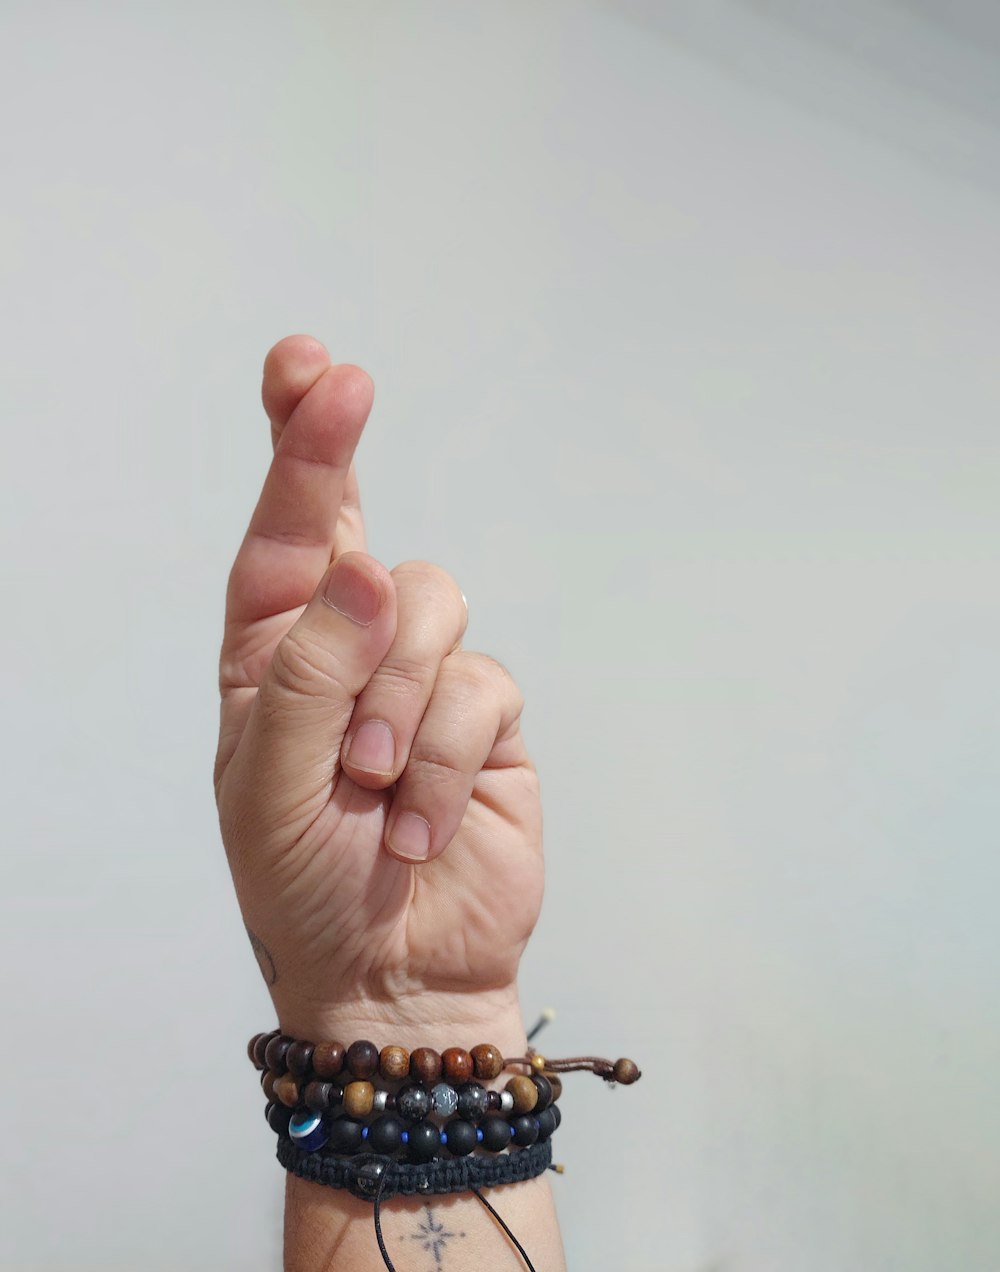 une personne portant un bracelet avec un signe de paix dessus